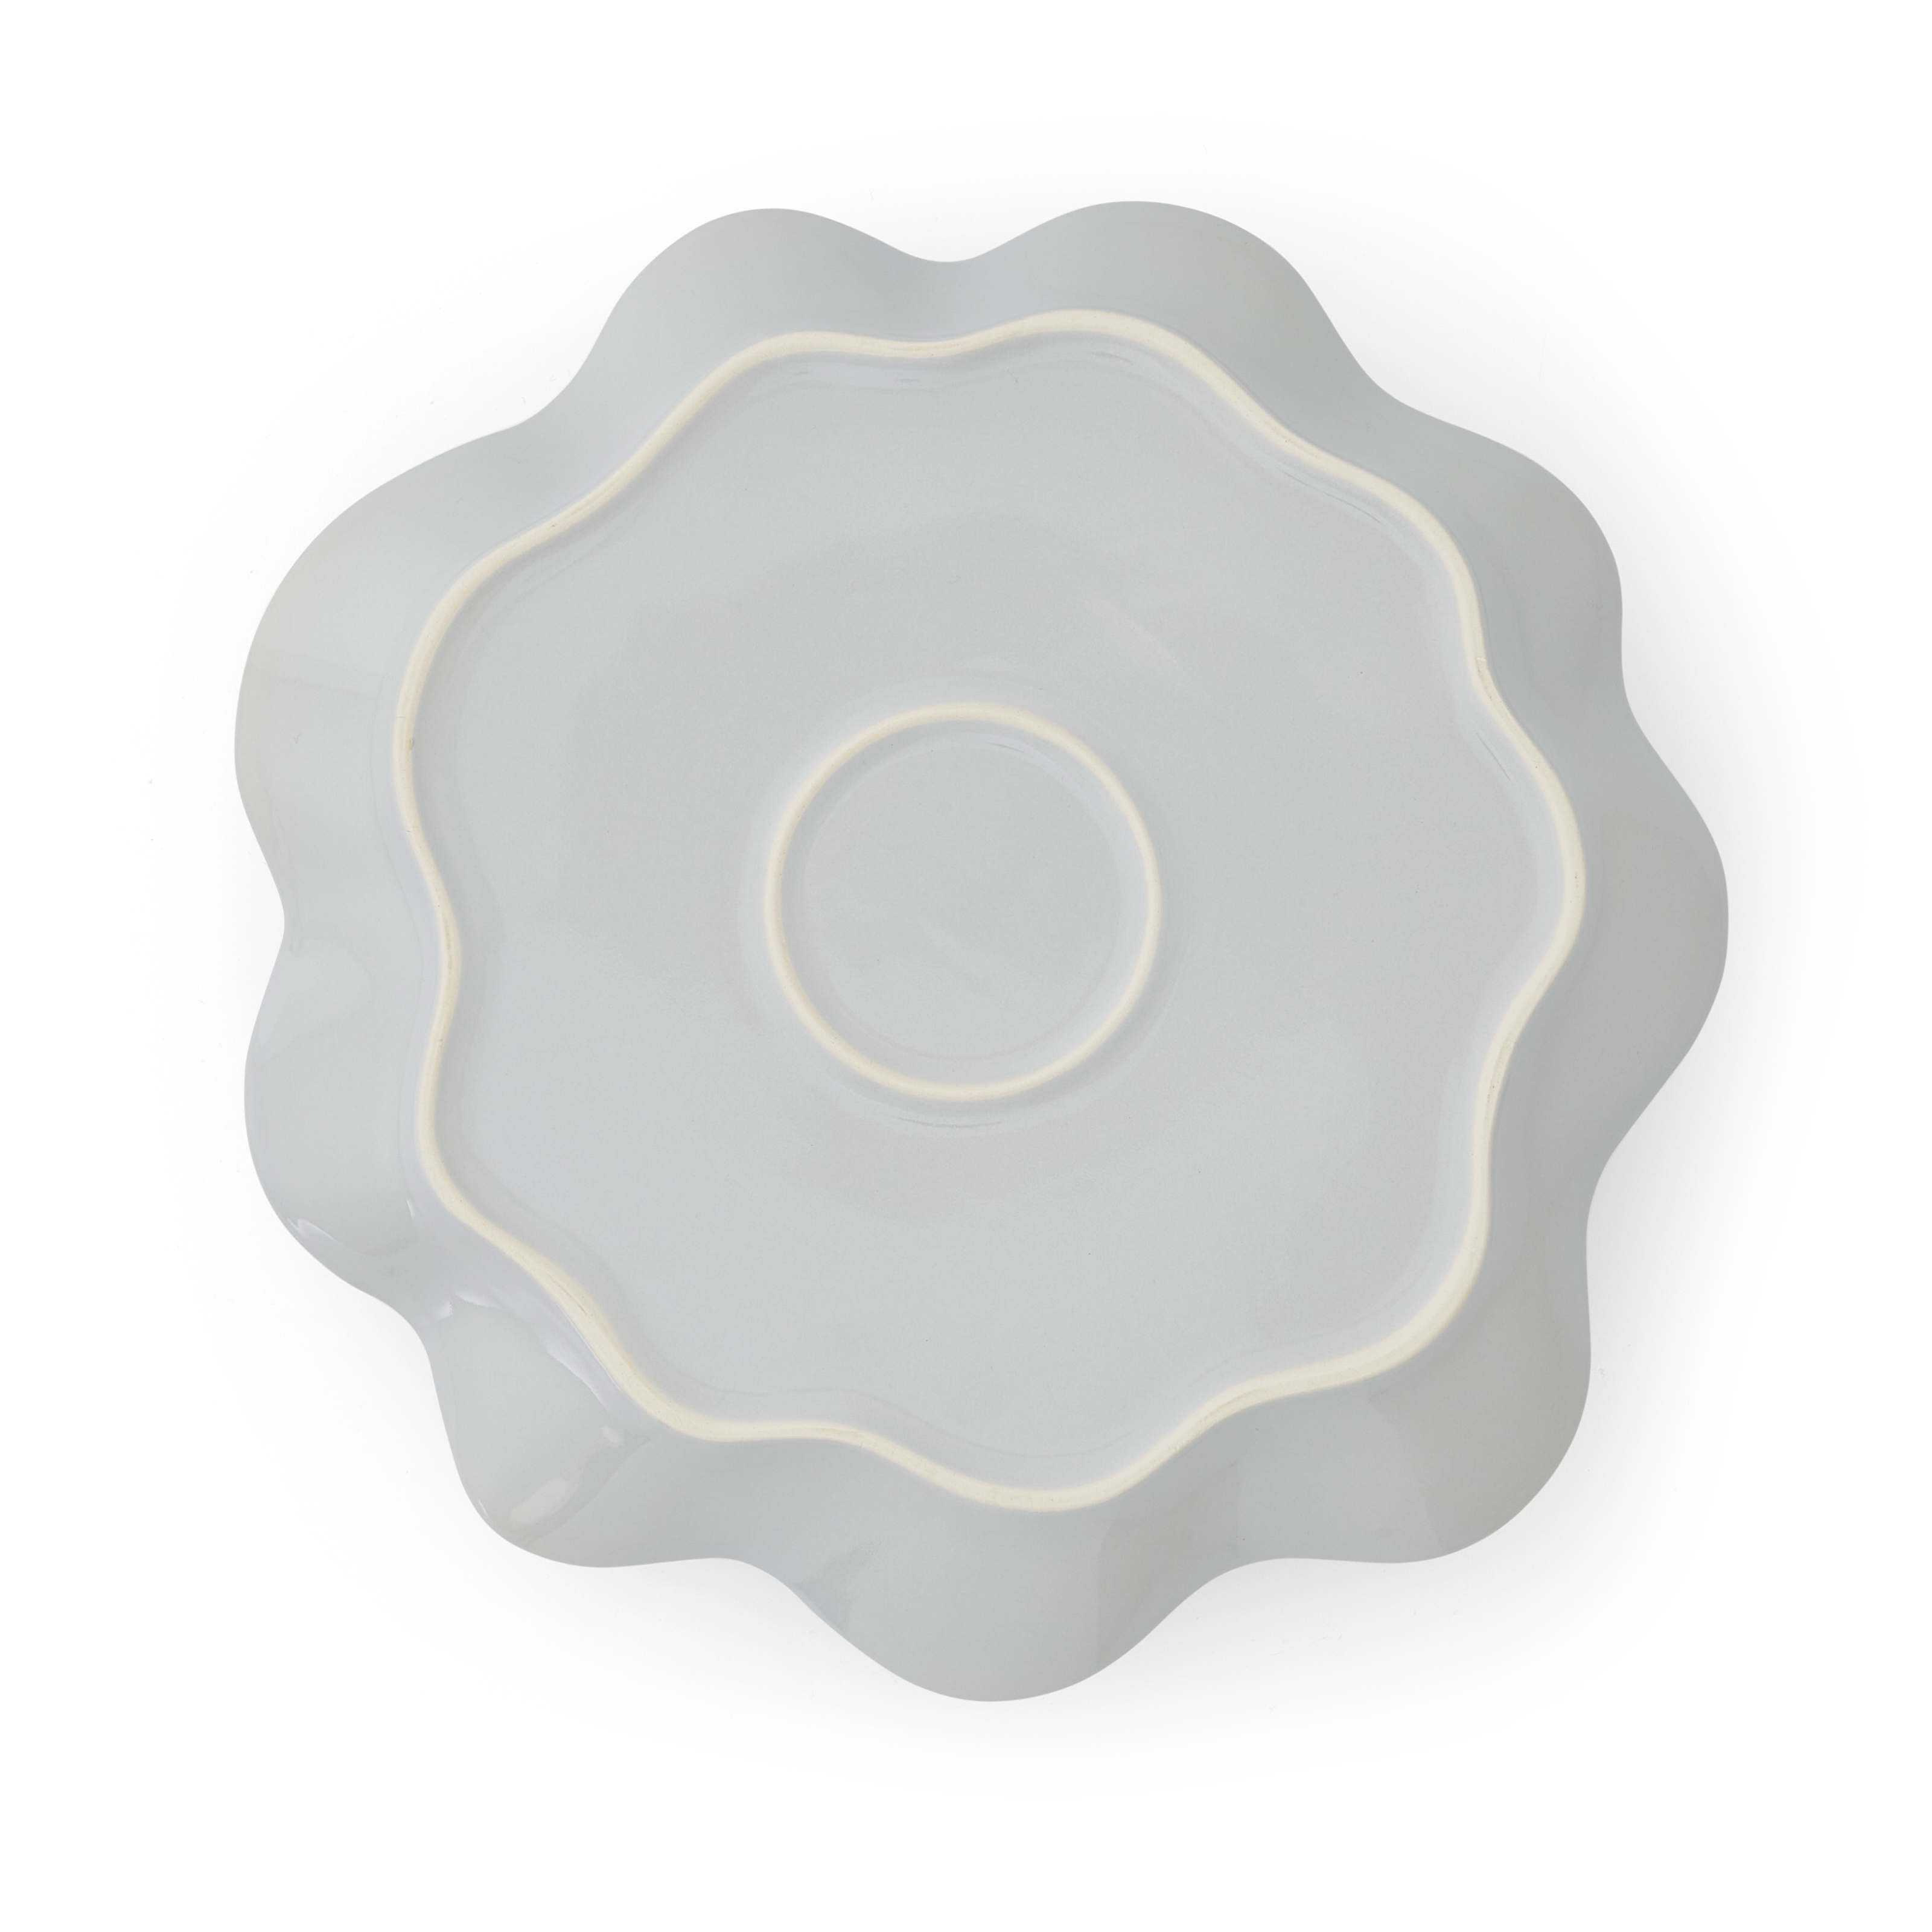 Sophie Conran Floret Large Serving Platter- Dove Grey image number null